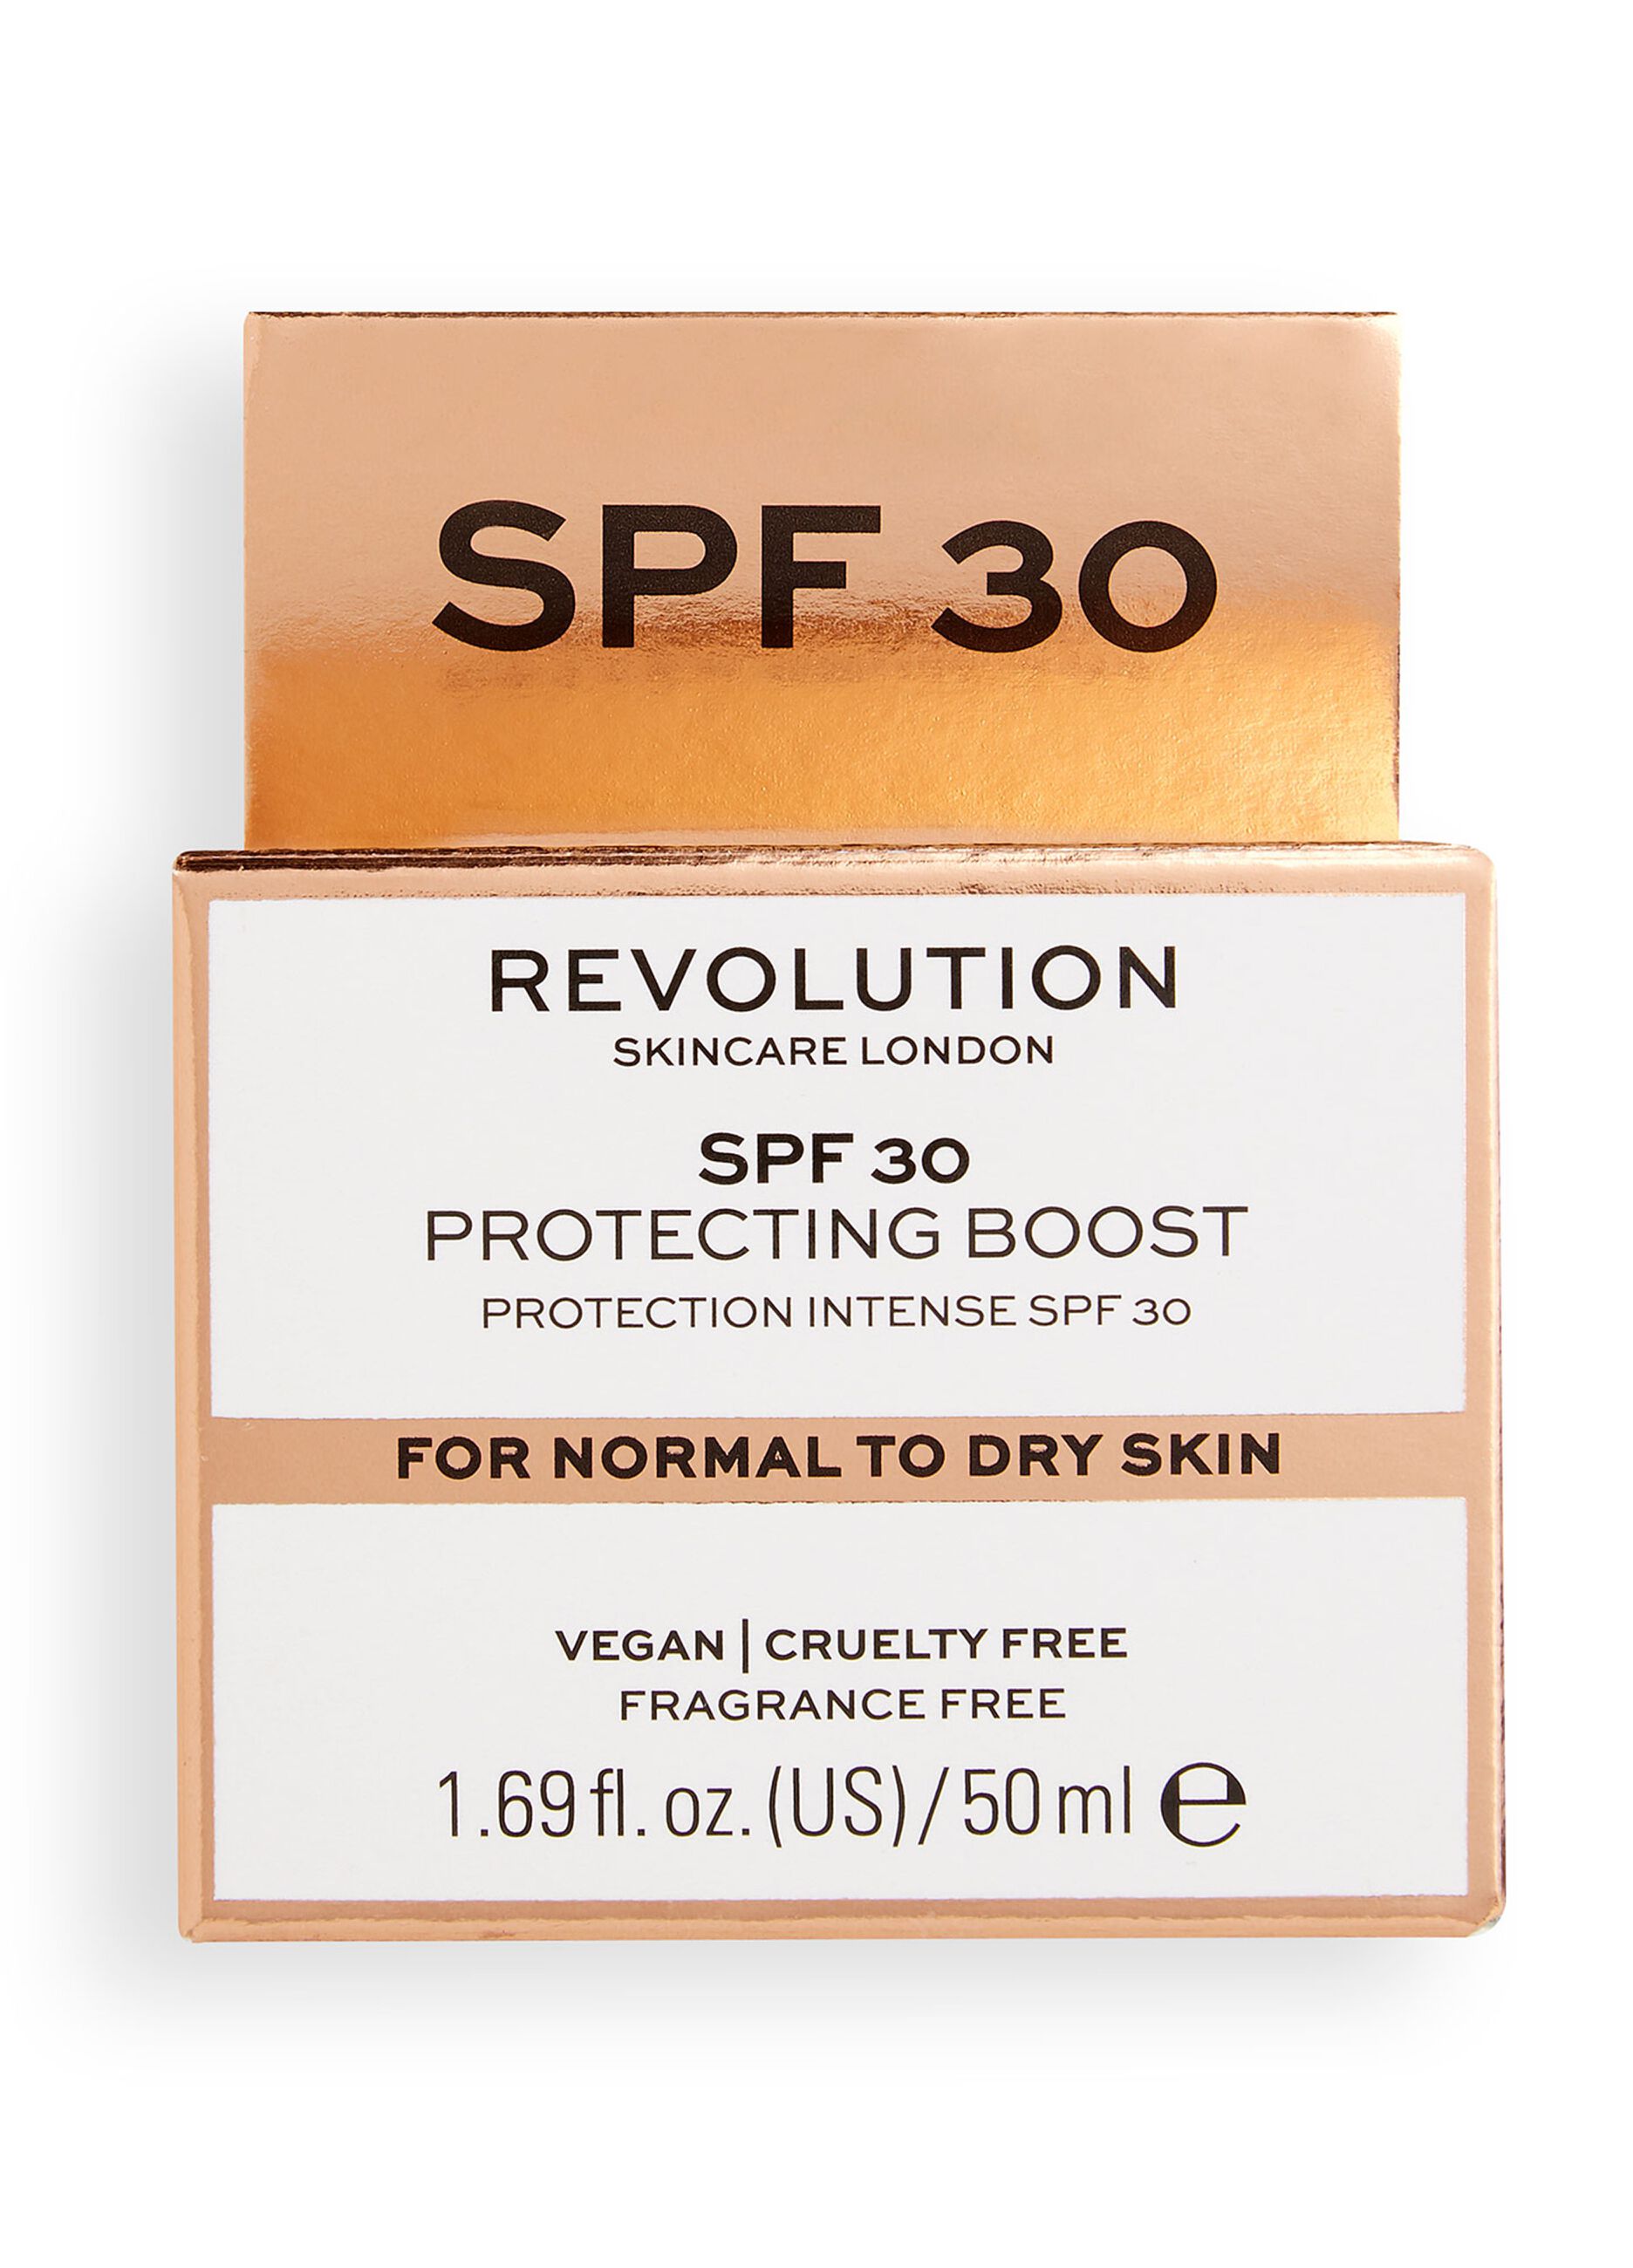 SPF 30 day cream for dry skin